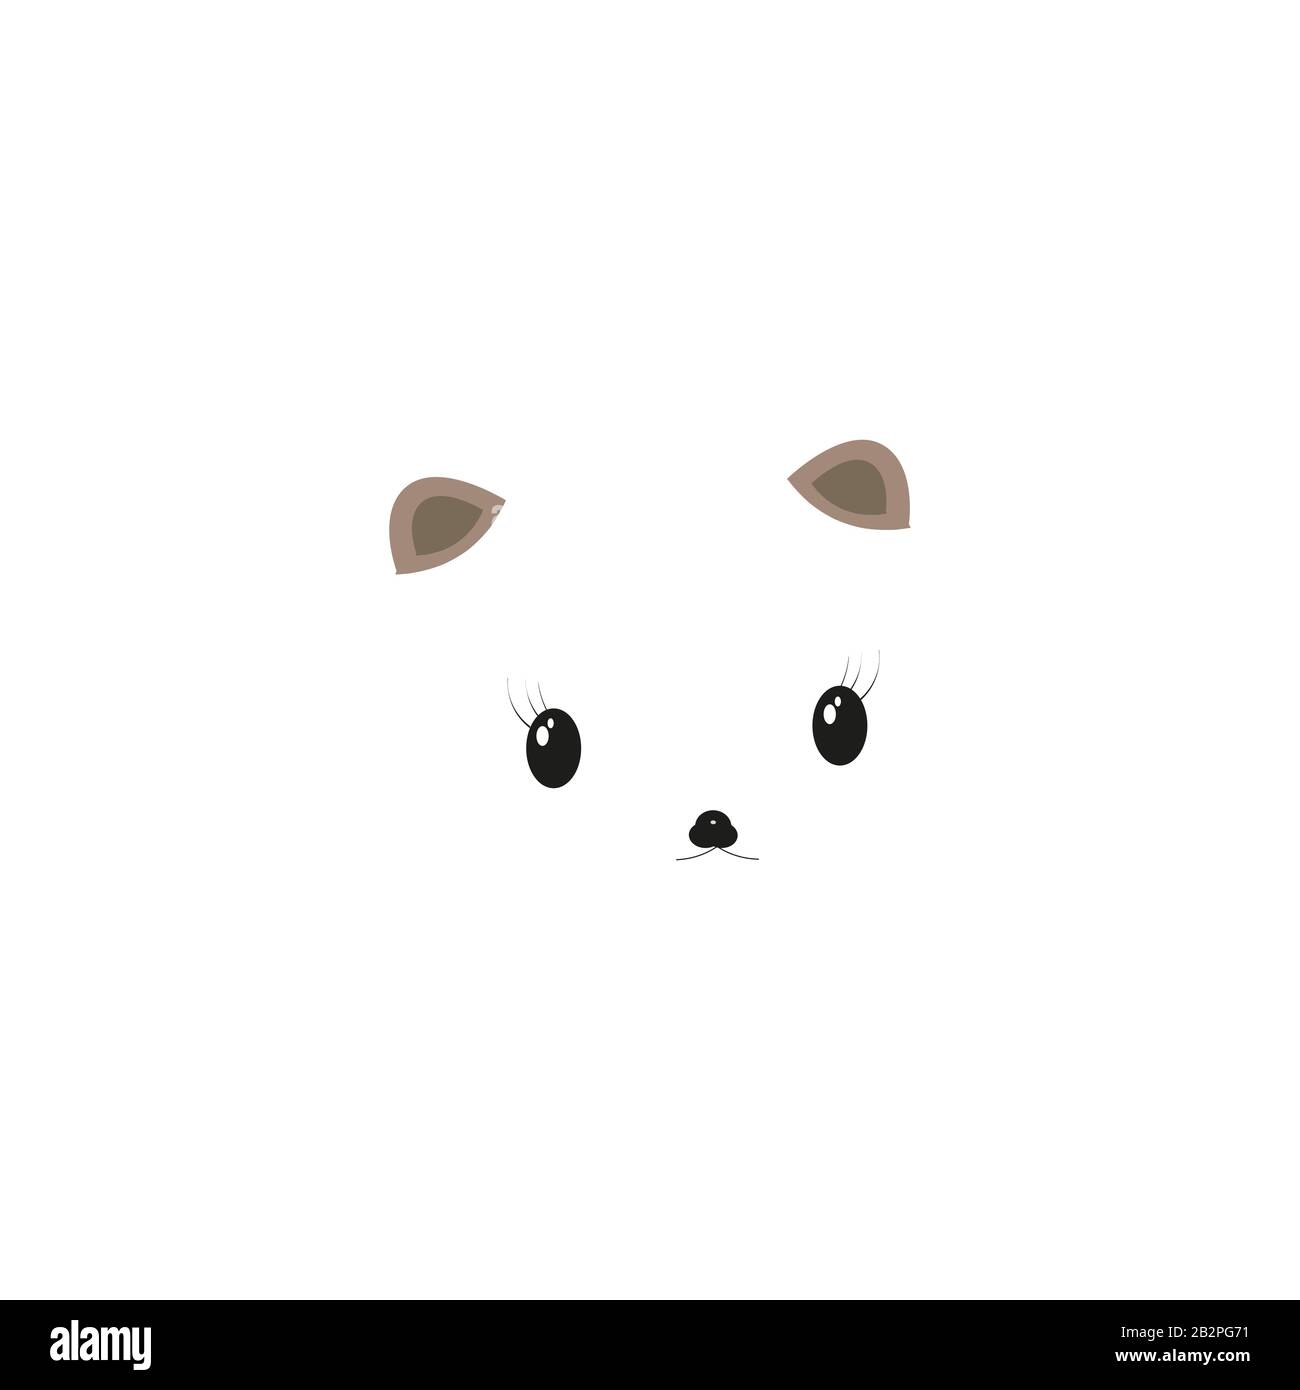 Panda Kawaii Panda with Heart Nose | Poster